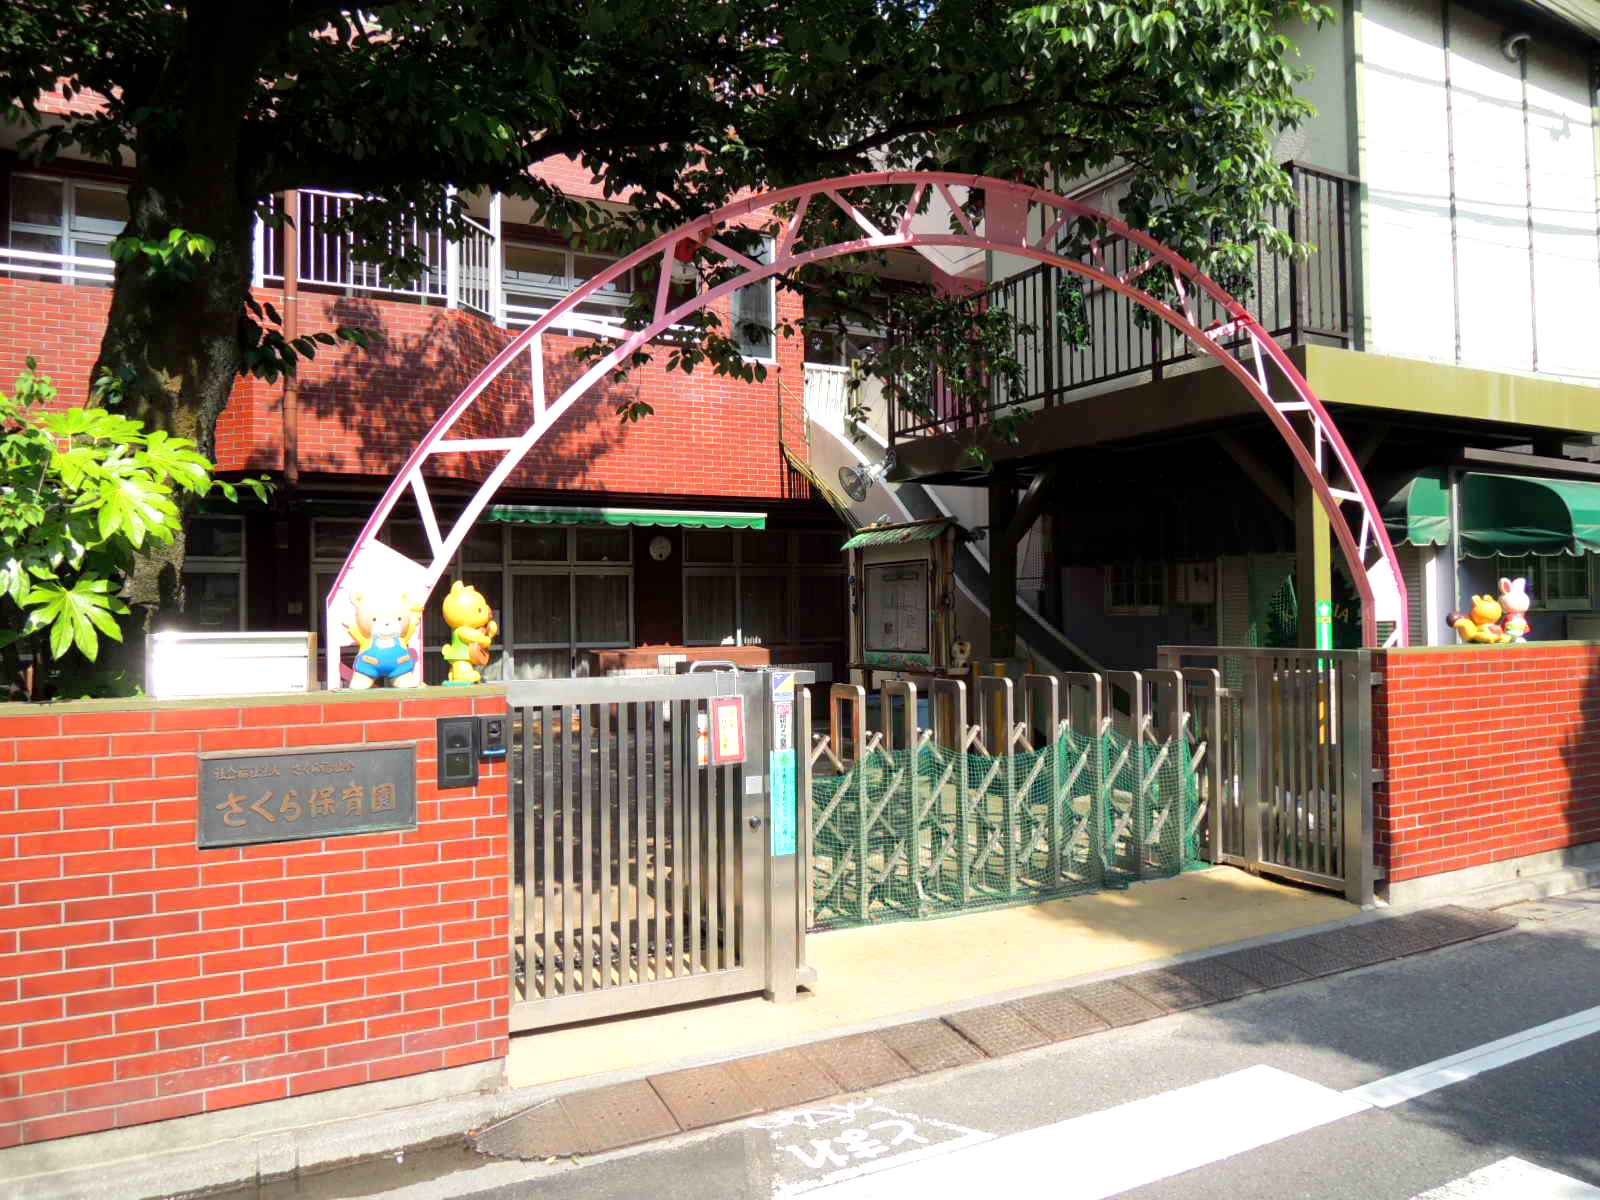 kindergarten ・ Nursery. Sakura nursery school (kindergarten ・ 183m to the nursery)